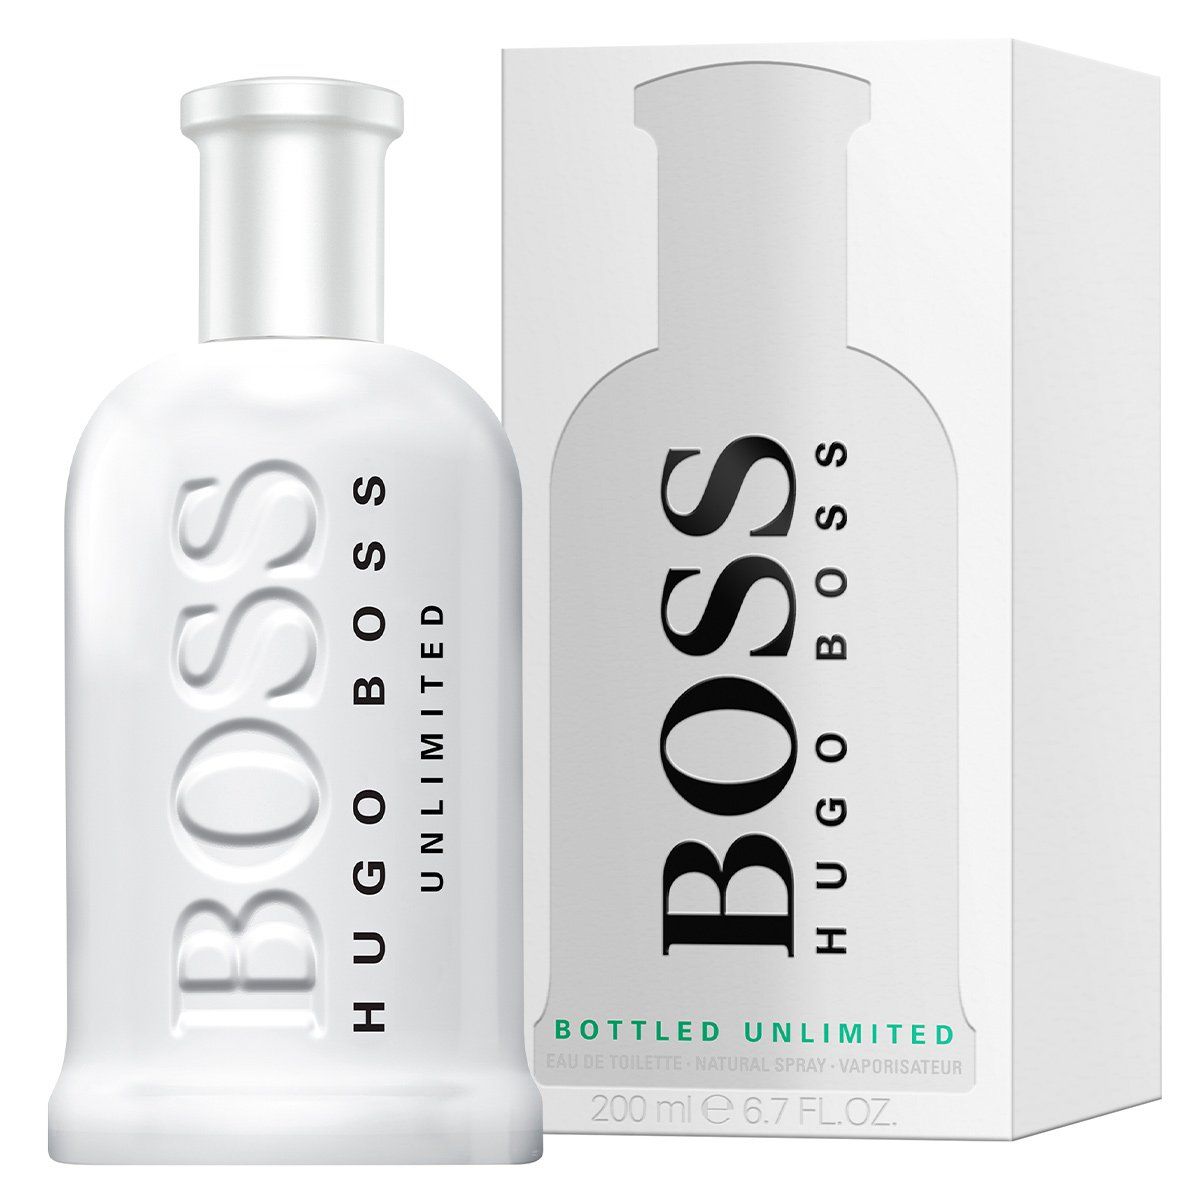  Hugo Boss Bottled Unlimited 